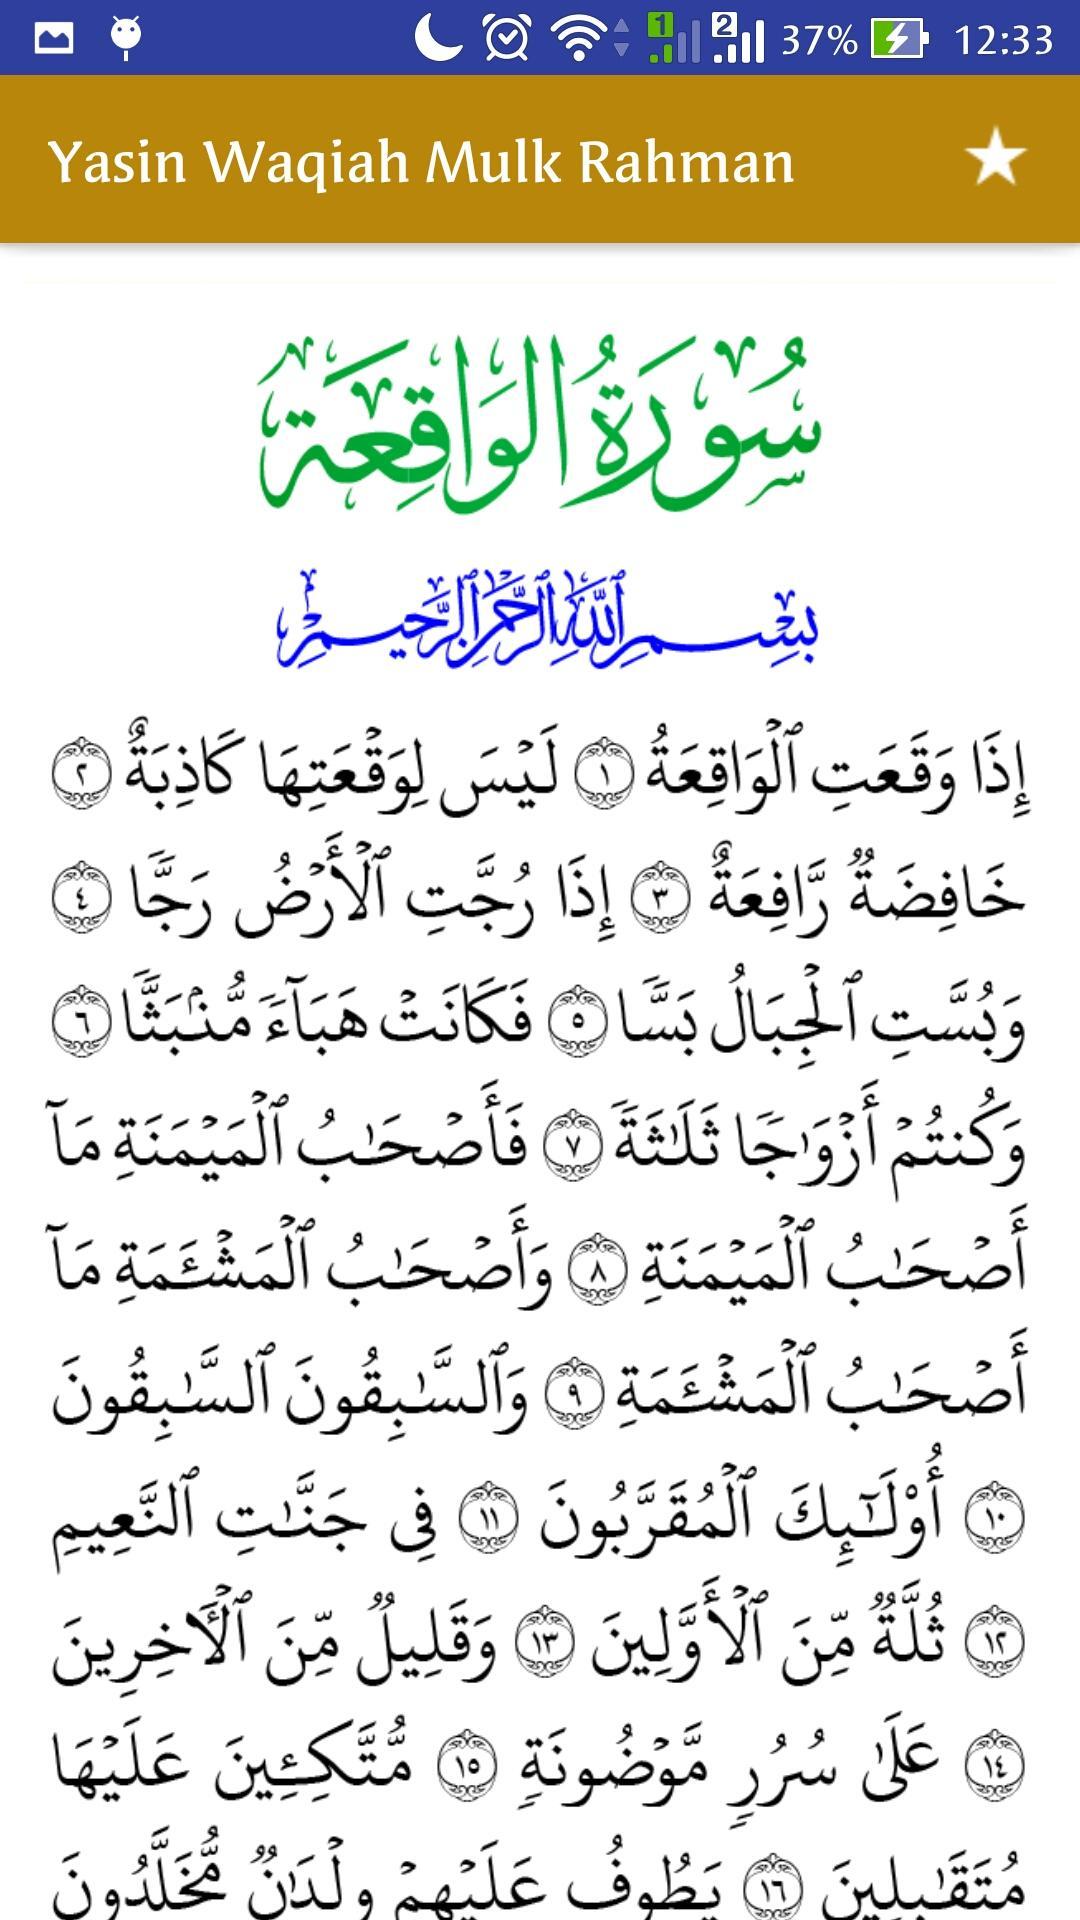 Surat al-waqiah